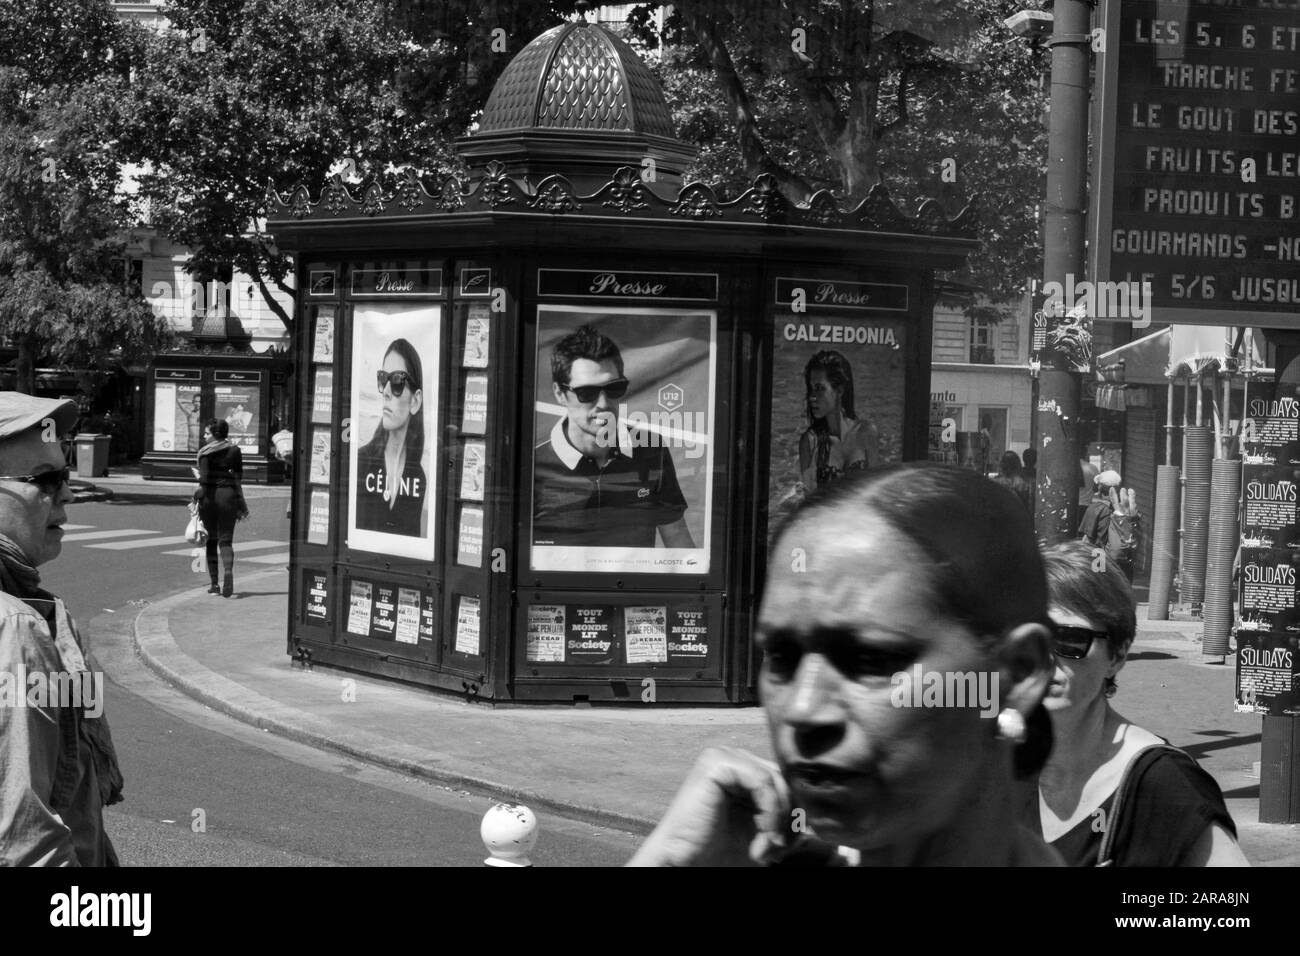 Tre volti, chiosco Presse, poster di Celine e Calzedonia, Parigi, Francia, Europa Foto Stock